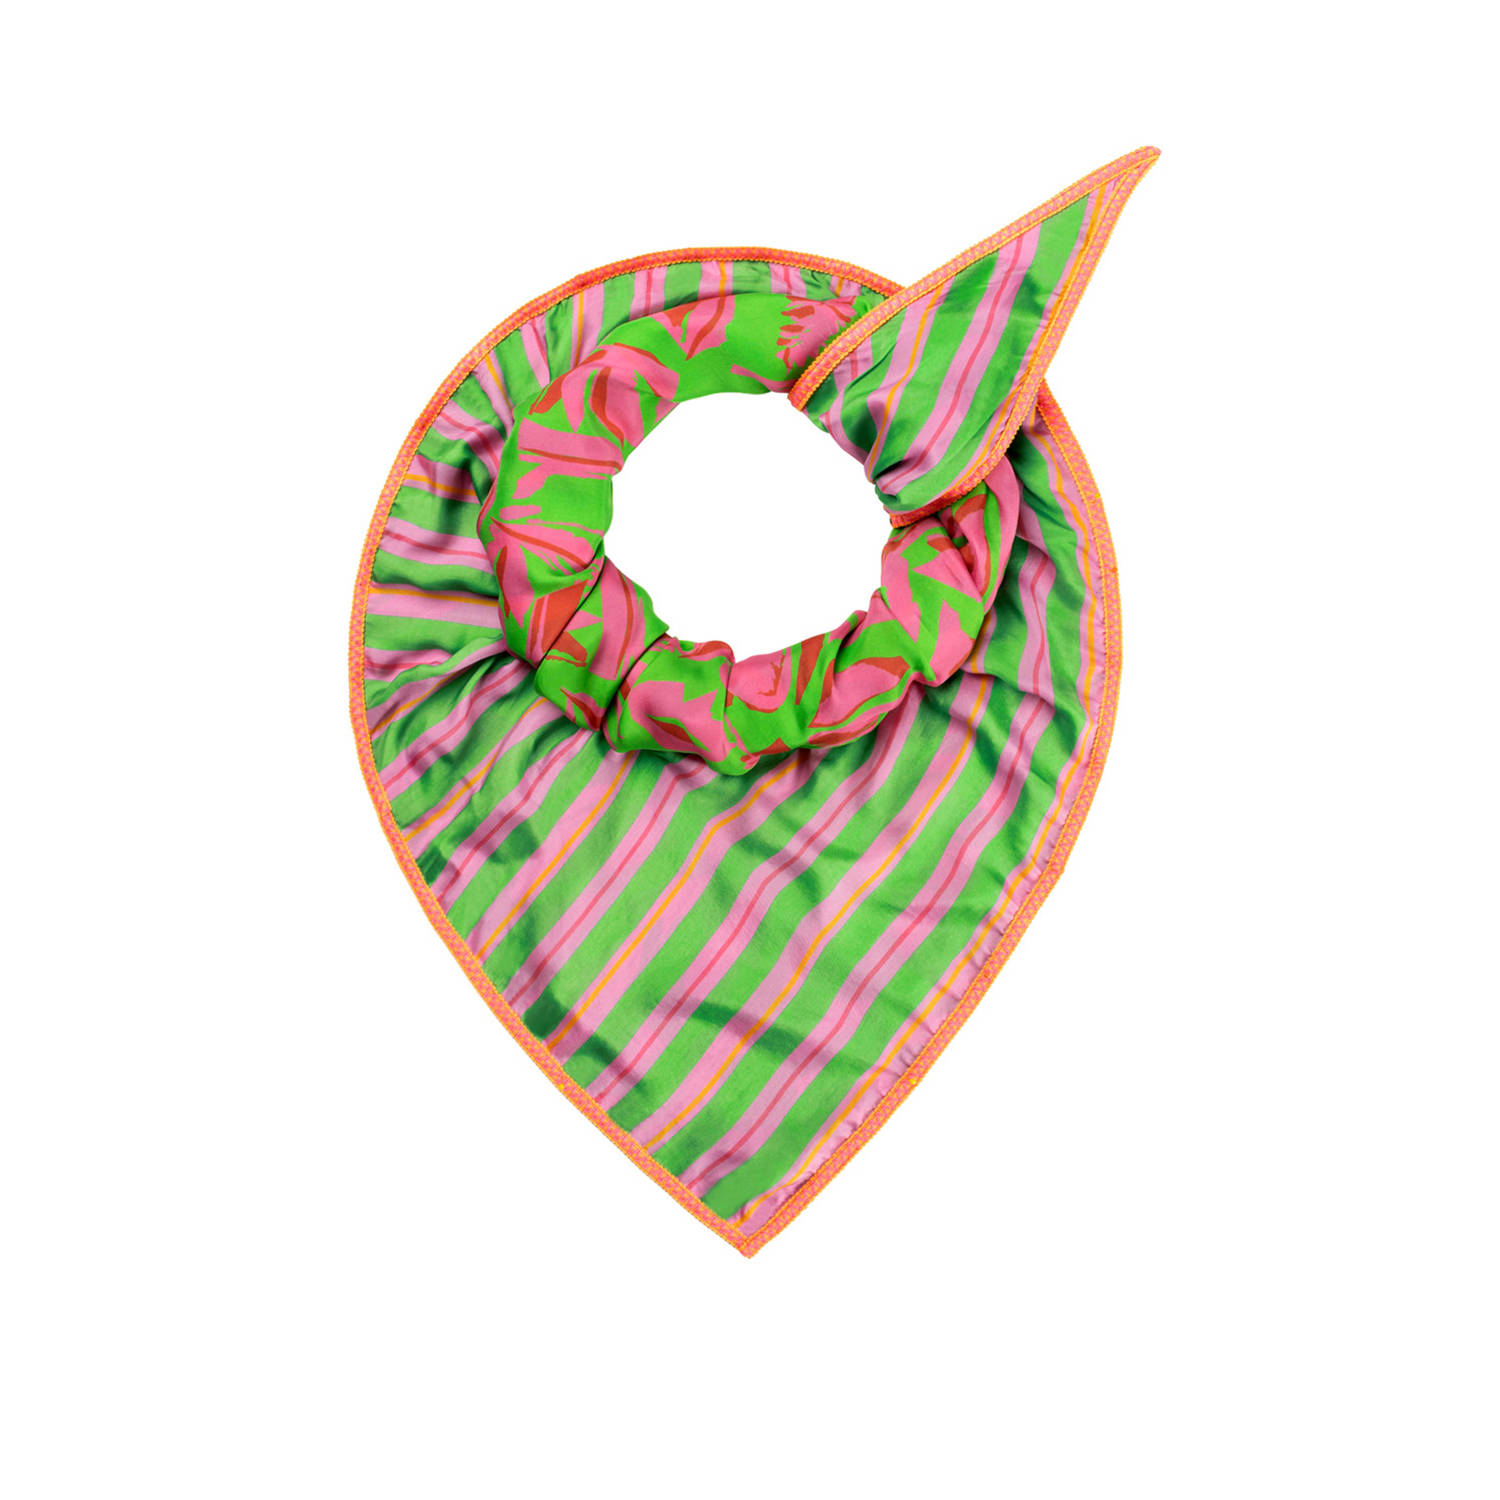 POM Amsterdam reversible sjaal met all over print groen